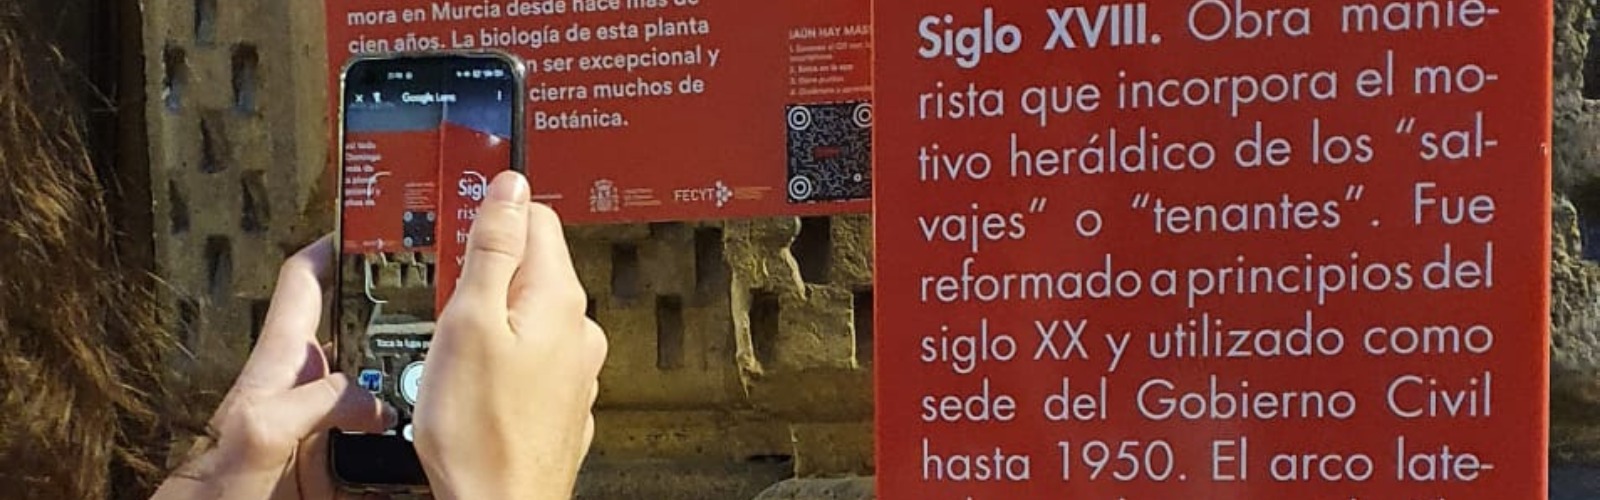 El proyecto científico de la UMU MurCiencia amplía sus horizontes en la Región de Murcia